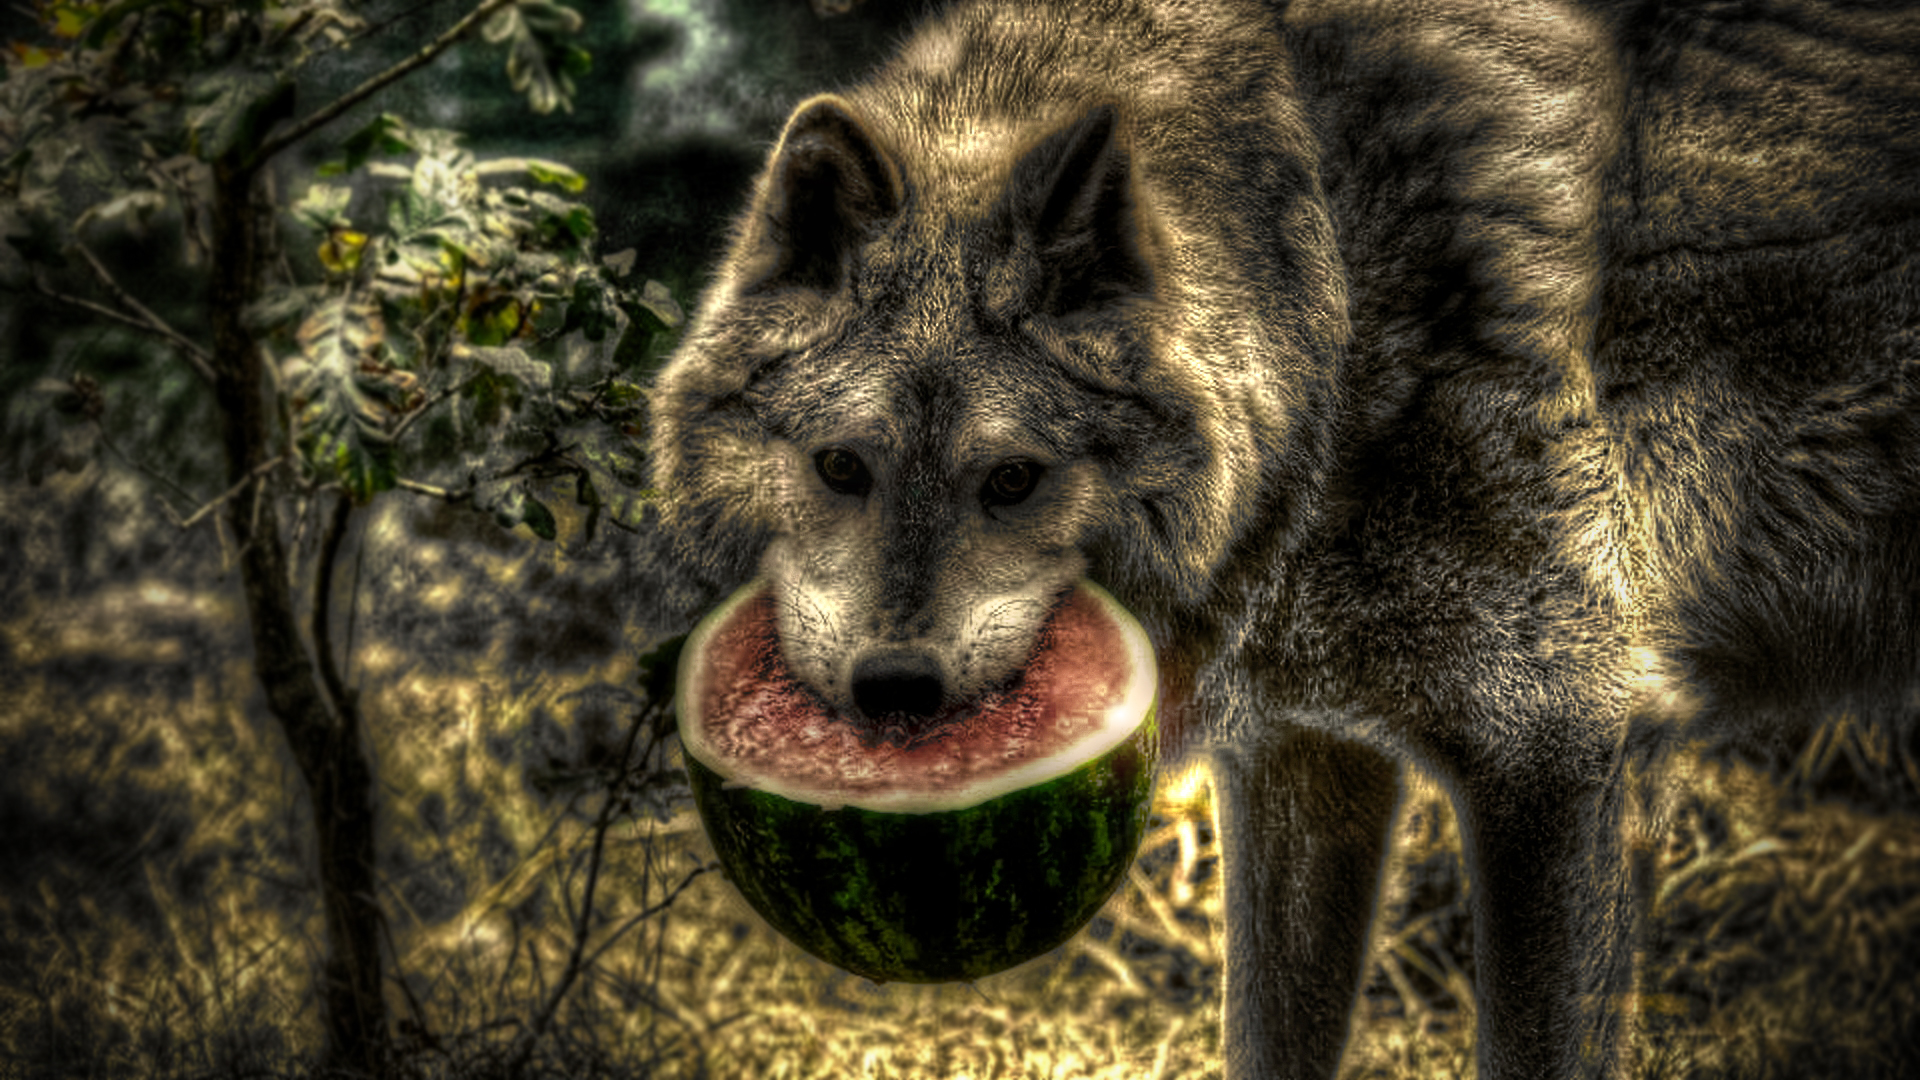 Watermelon Wolf